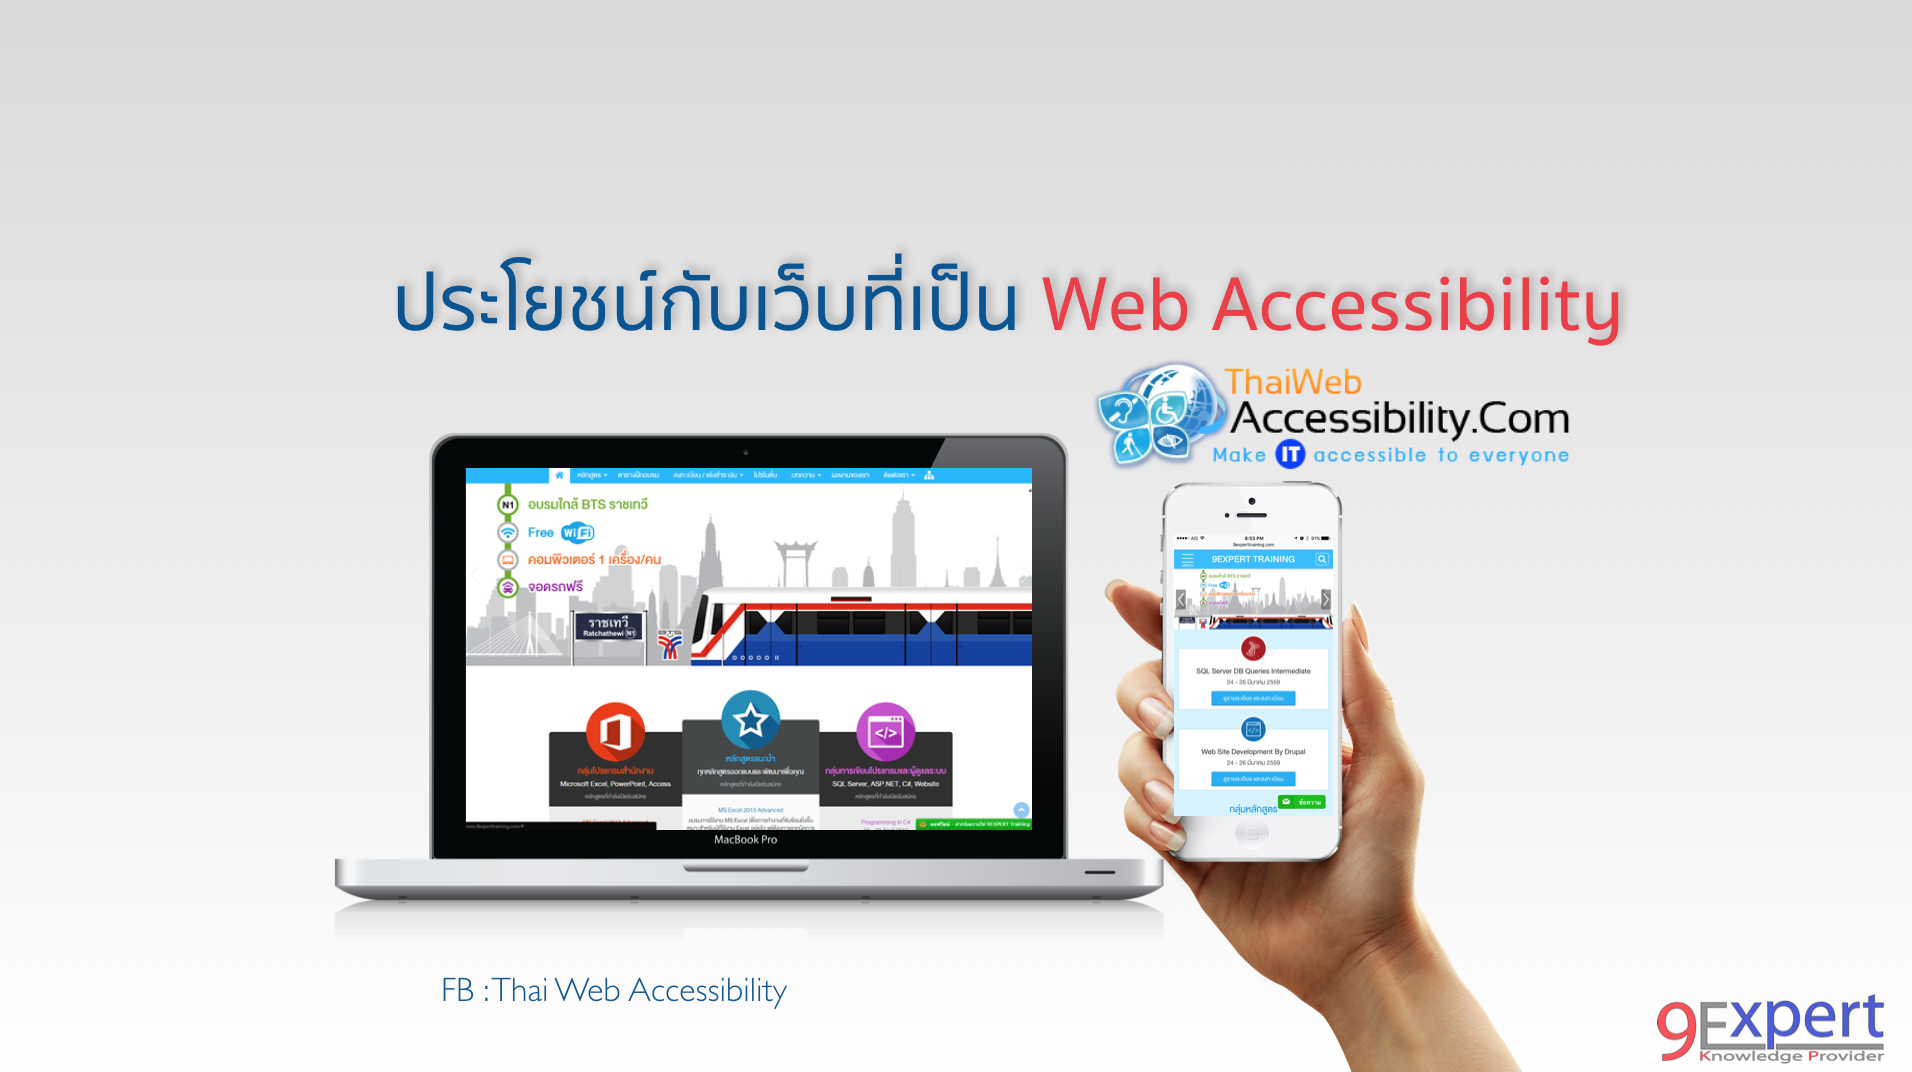 ประโยชน์กับเว็บที่เป็น Web Accessibility